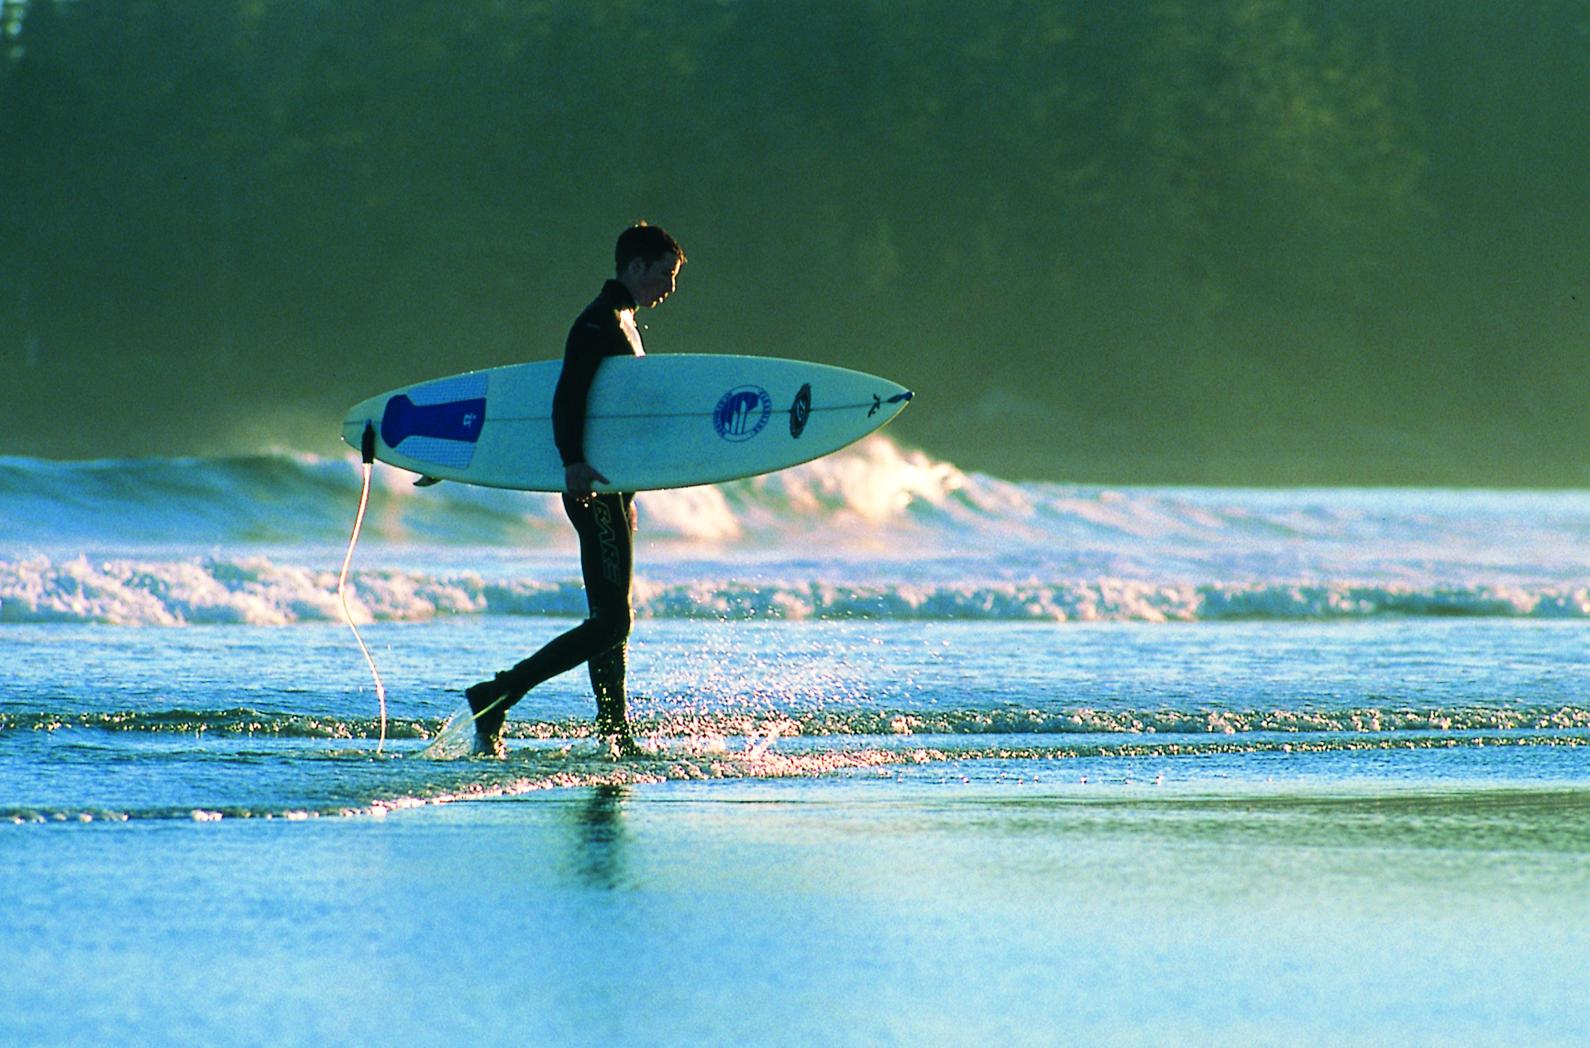 Surfing - Best of British Columbia